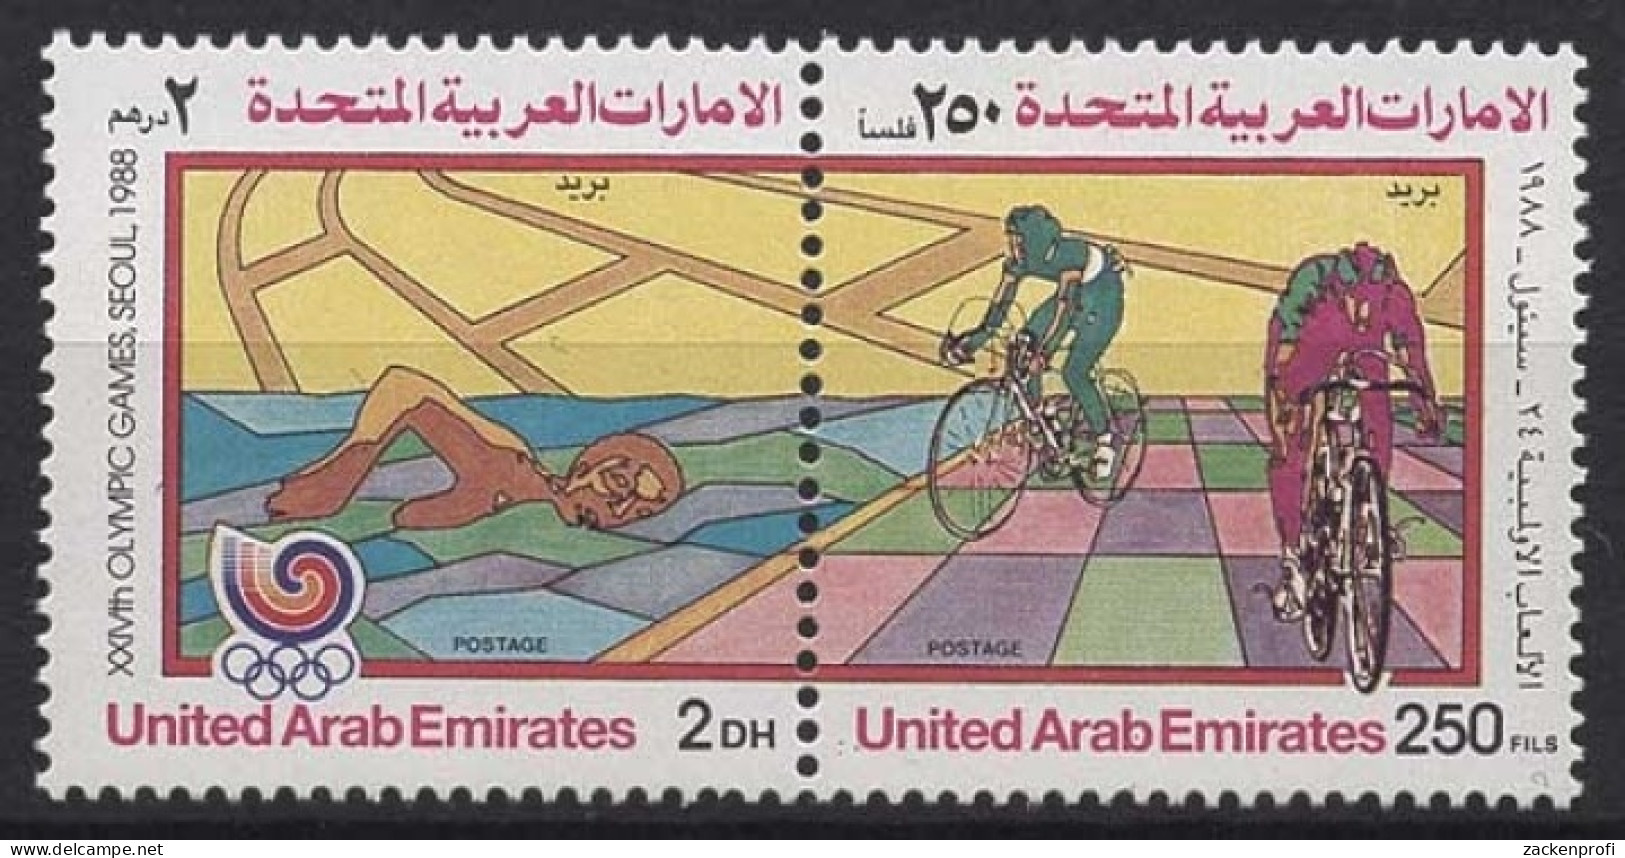 Vereinigte Arabische Emirate 1988 Olympiade Seoul 259/60 ZD Postfrisch - Verenigde Arabische Emiraten